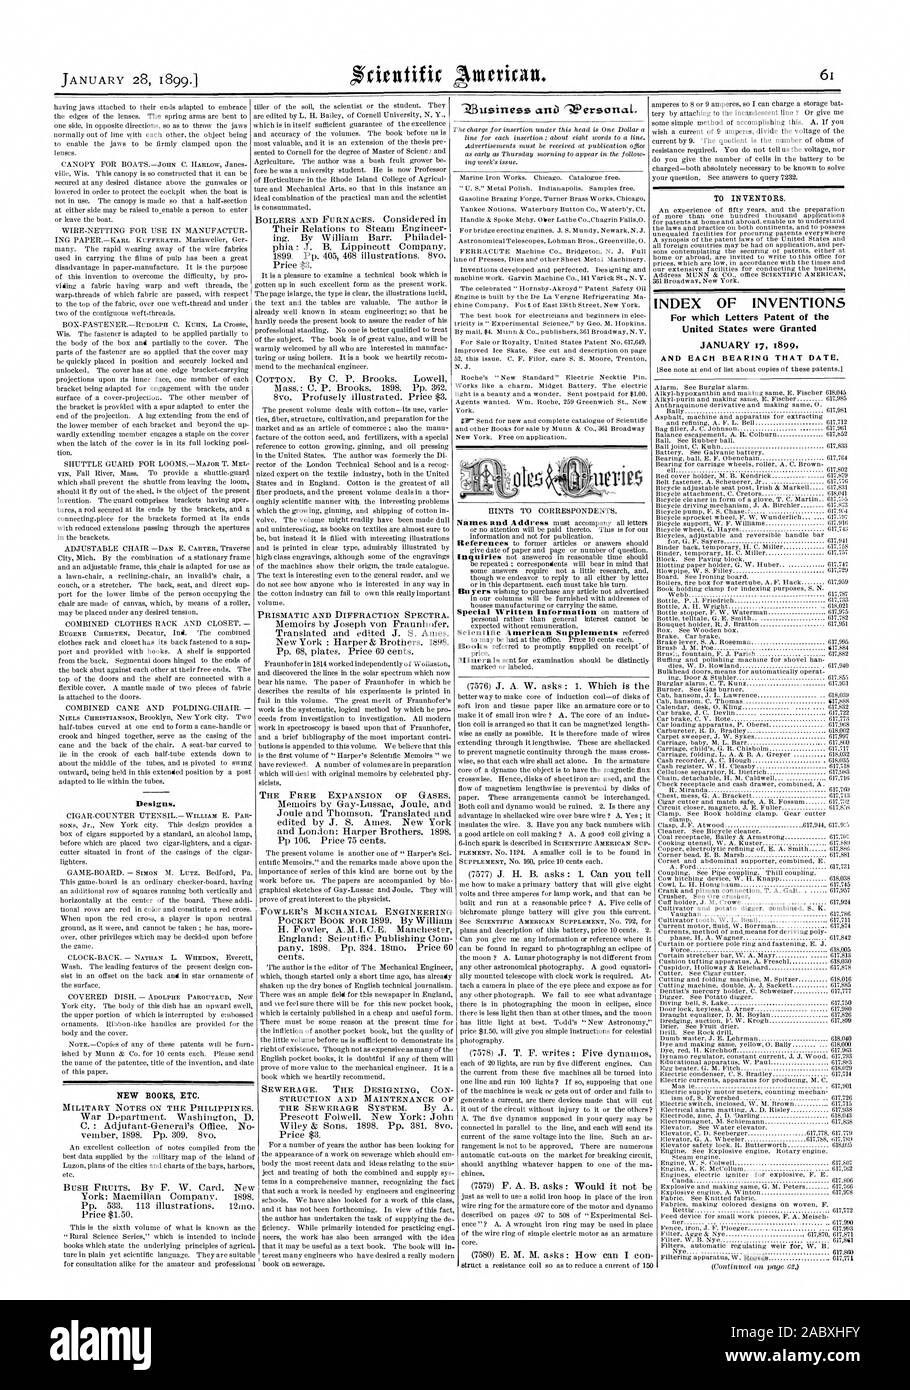 Pour les inventeurs. INDEX DES INVENTIONS pour lesquelles Lettres patentes de l'United States ont été octroyées le 17 janvier 1899 NOUVEAUX LIVRES ETC., Scientific American, 1899-01-28 Banque D'Images